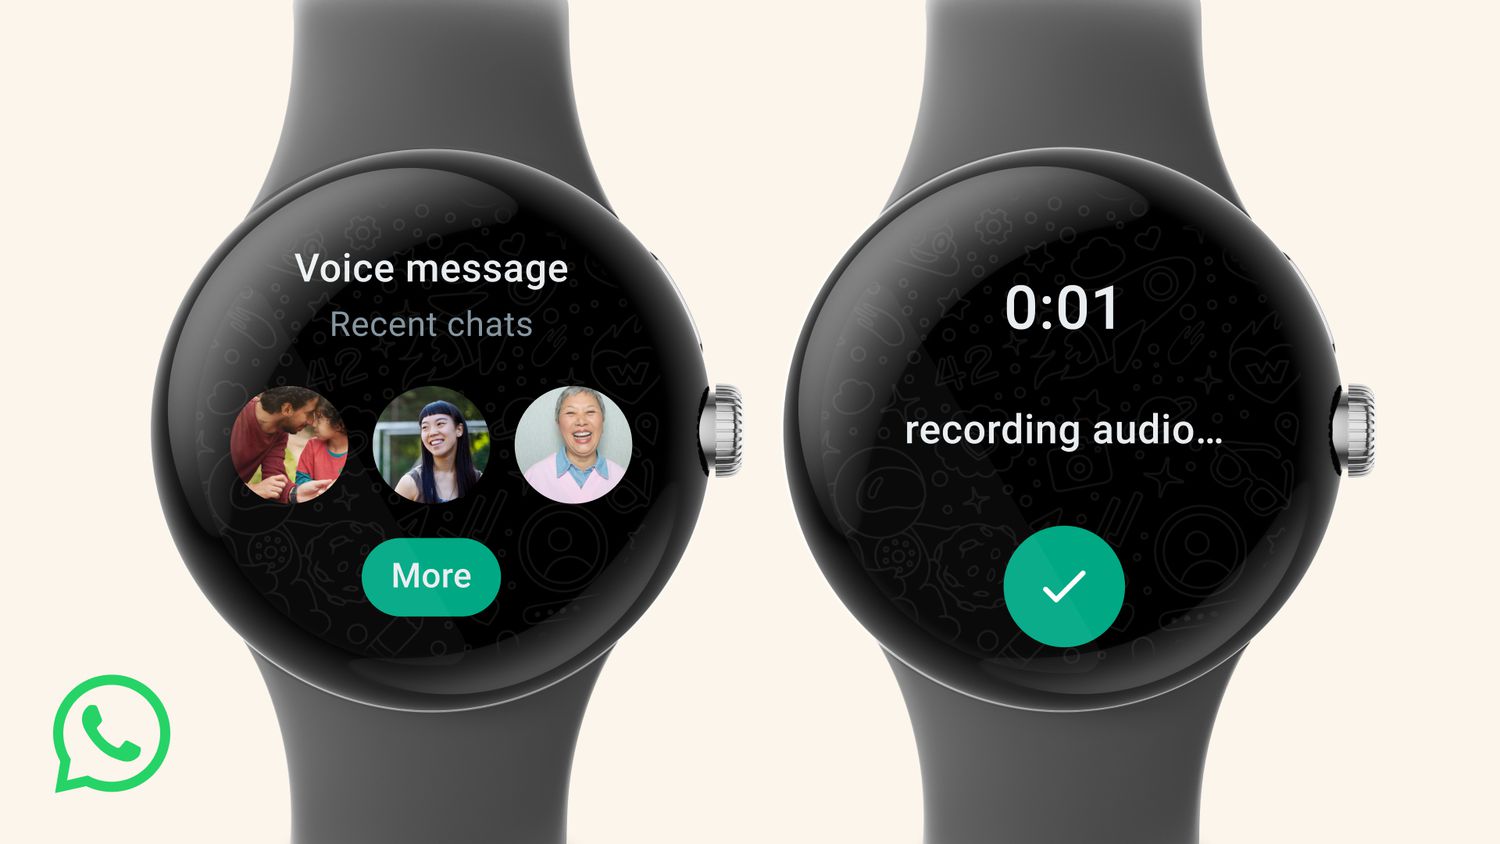 WhatsApp-App ist jetzt auf der Samsung Galaxy Watch und anderen Wear OS Smartwatches verfügbar